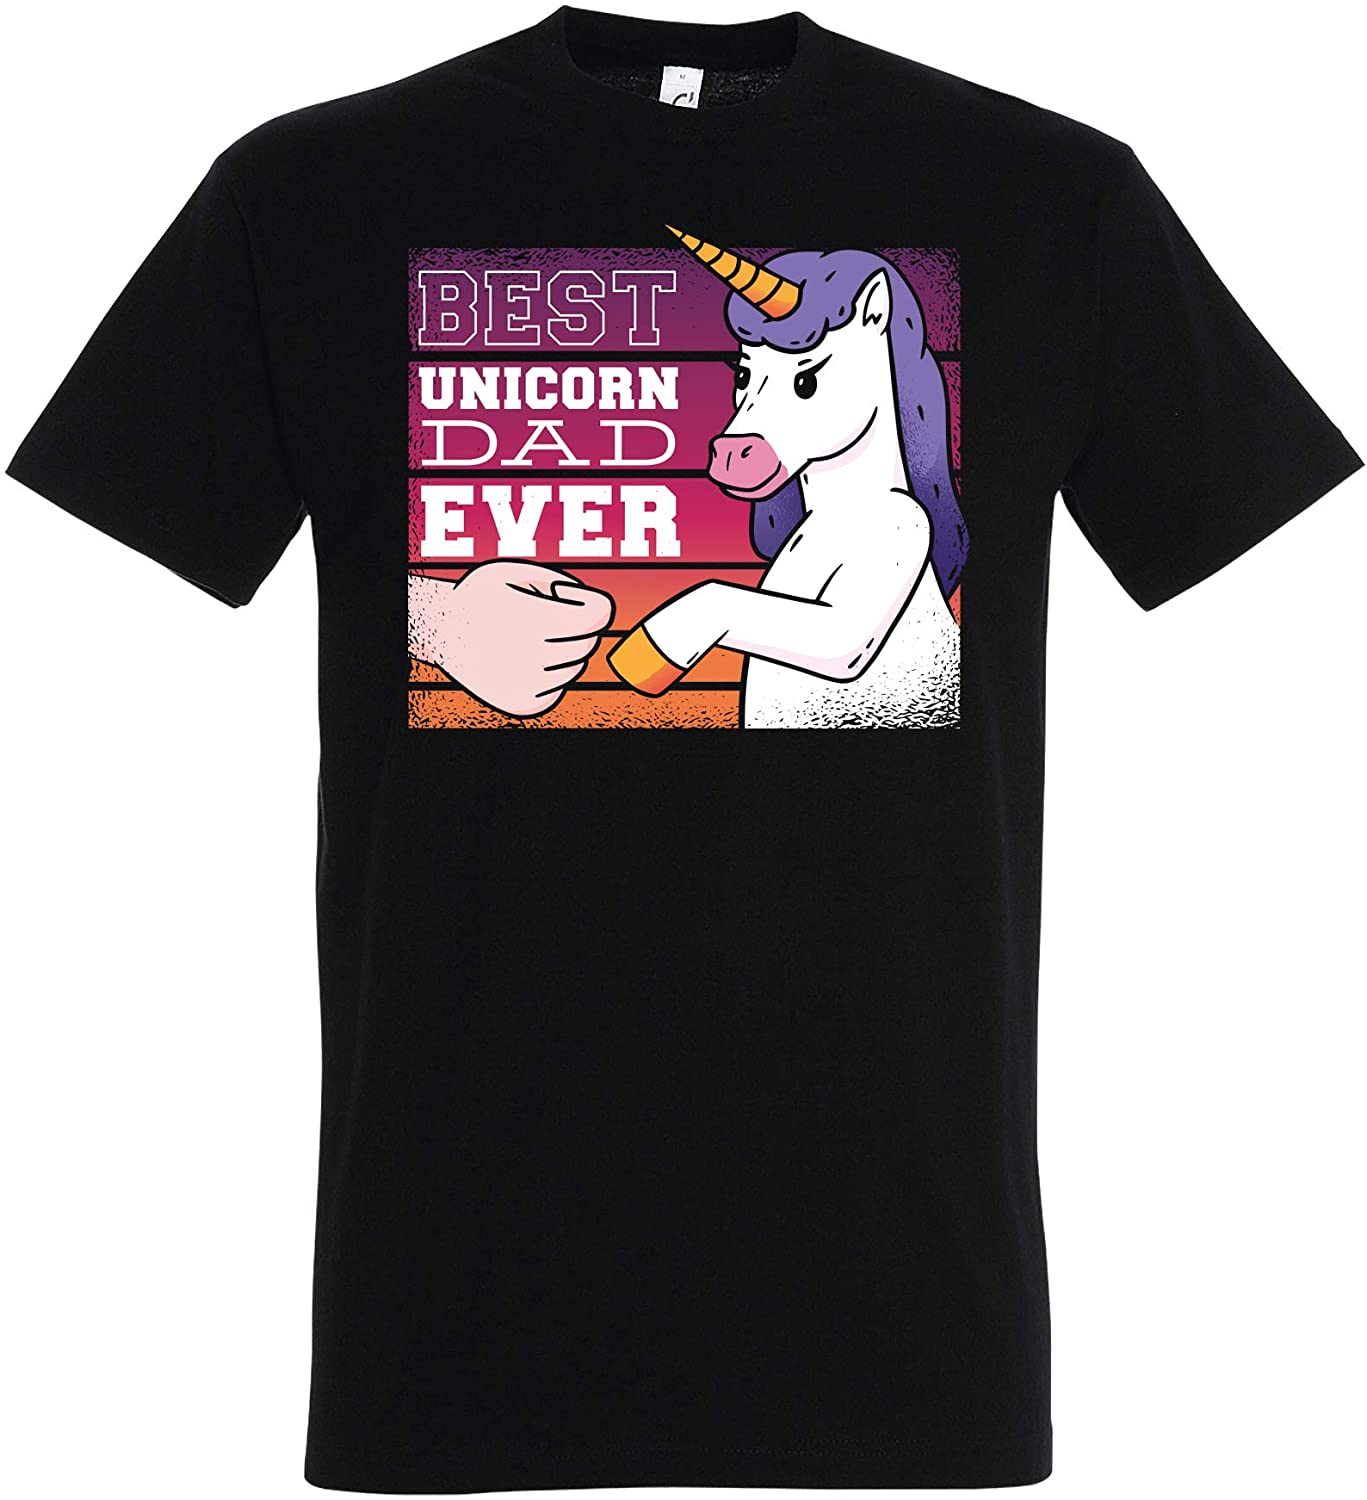 Schwarzes T-Shirt Best Unicorn dad Ever, Einhorn, Geschenk für Papas, Vatertag Geburtstag